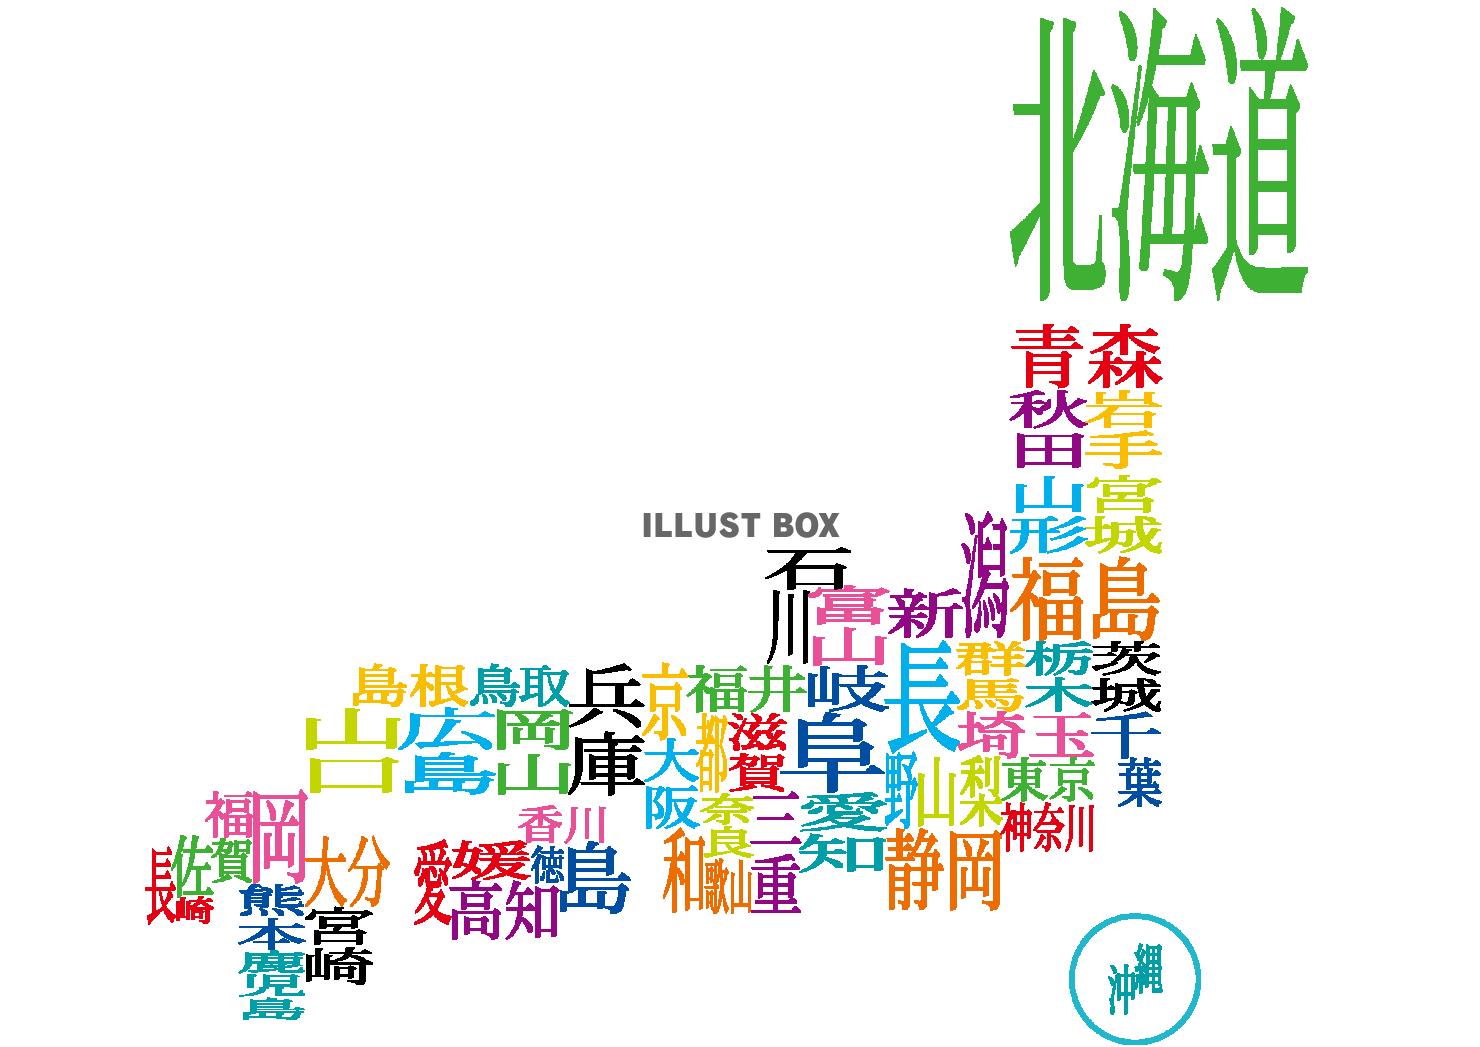 カラフルな漢字で構成した日本地図